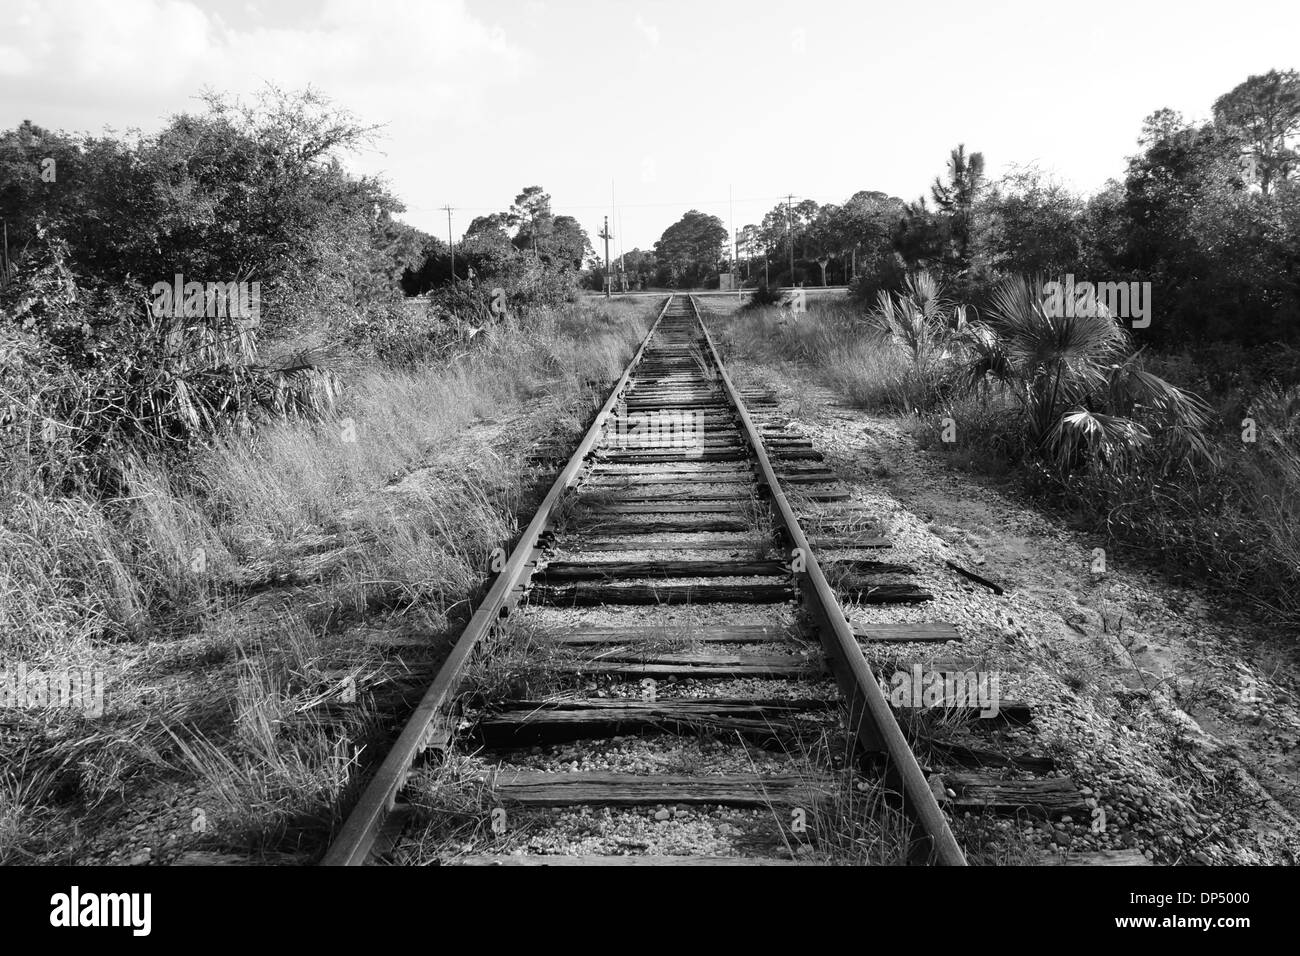 Imagen en blanco y negro del antiguo ferrocarril vía que converge en la distancia en una calle. Foto de stock